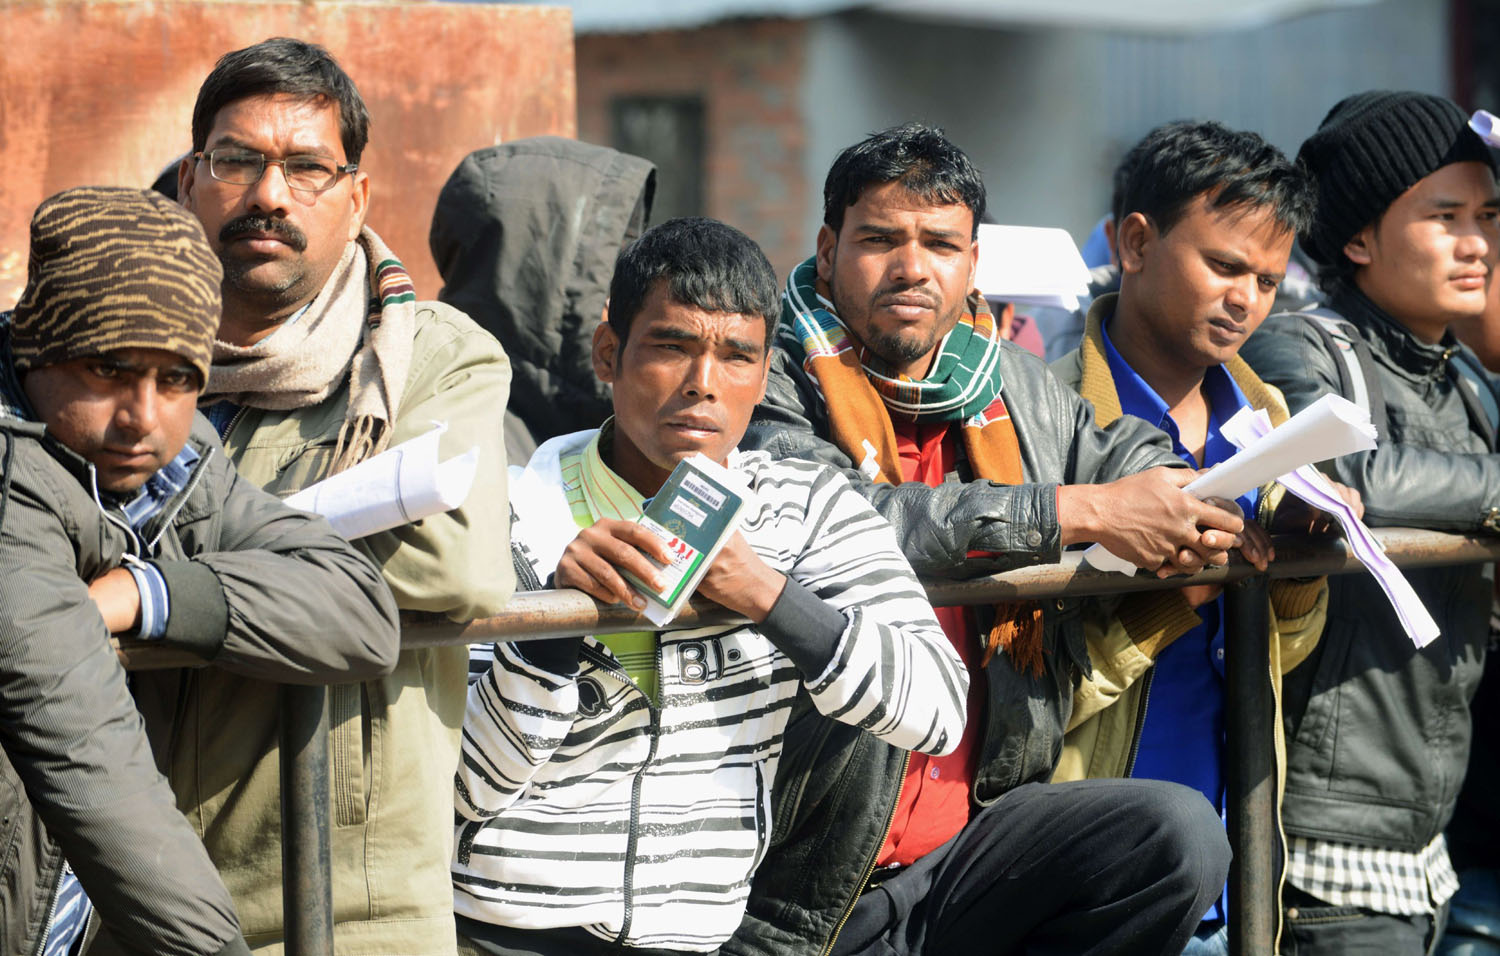 اكثر من الف عامل نيبالي لقوا حتفهم في قطر خلال خمس سنوات